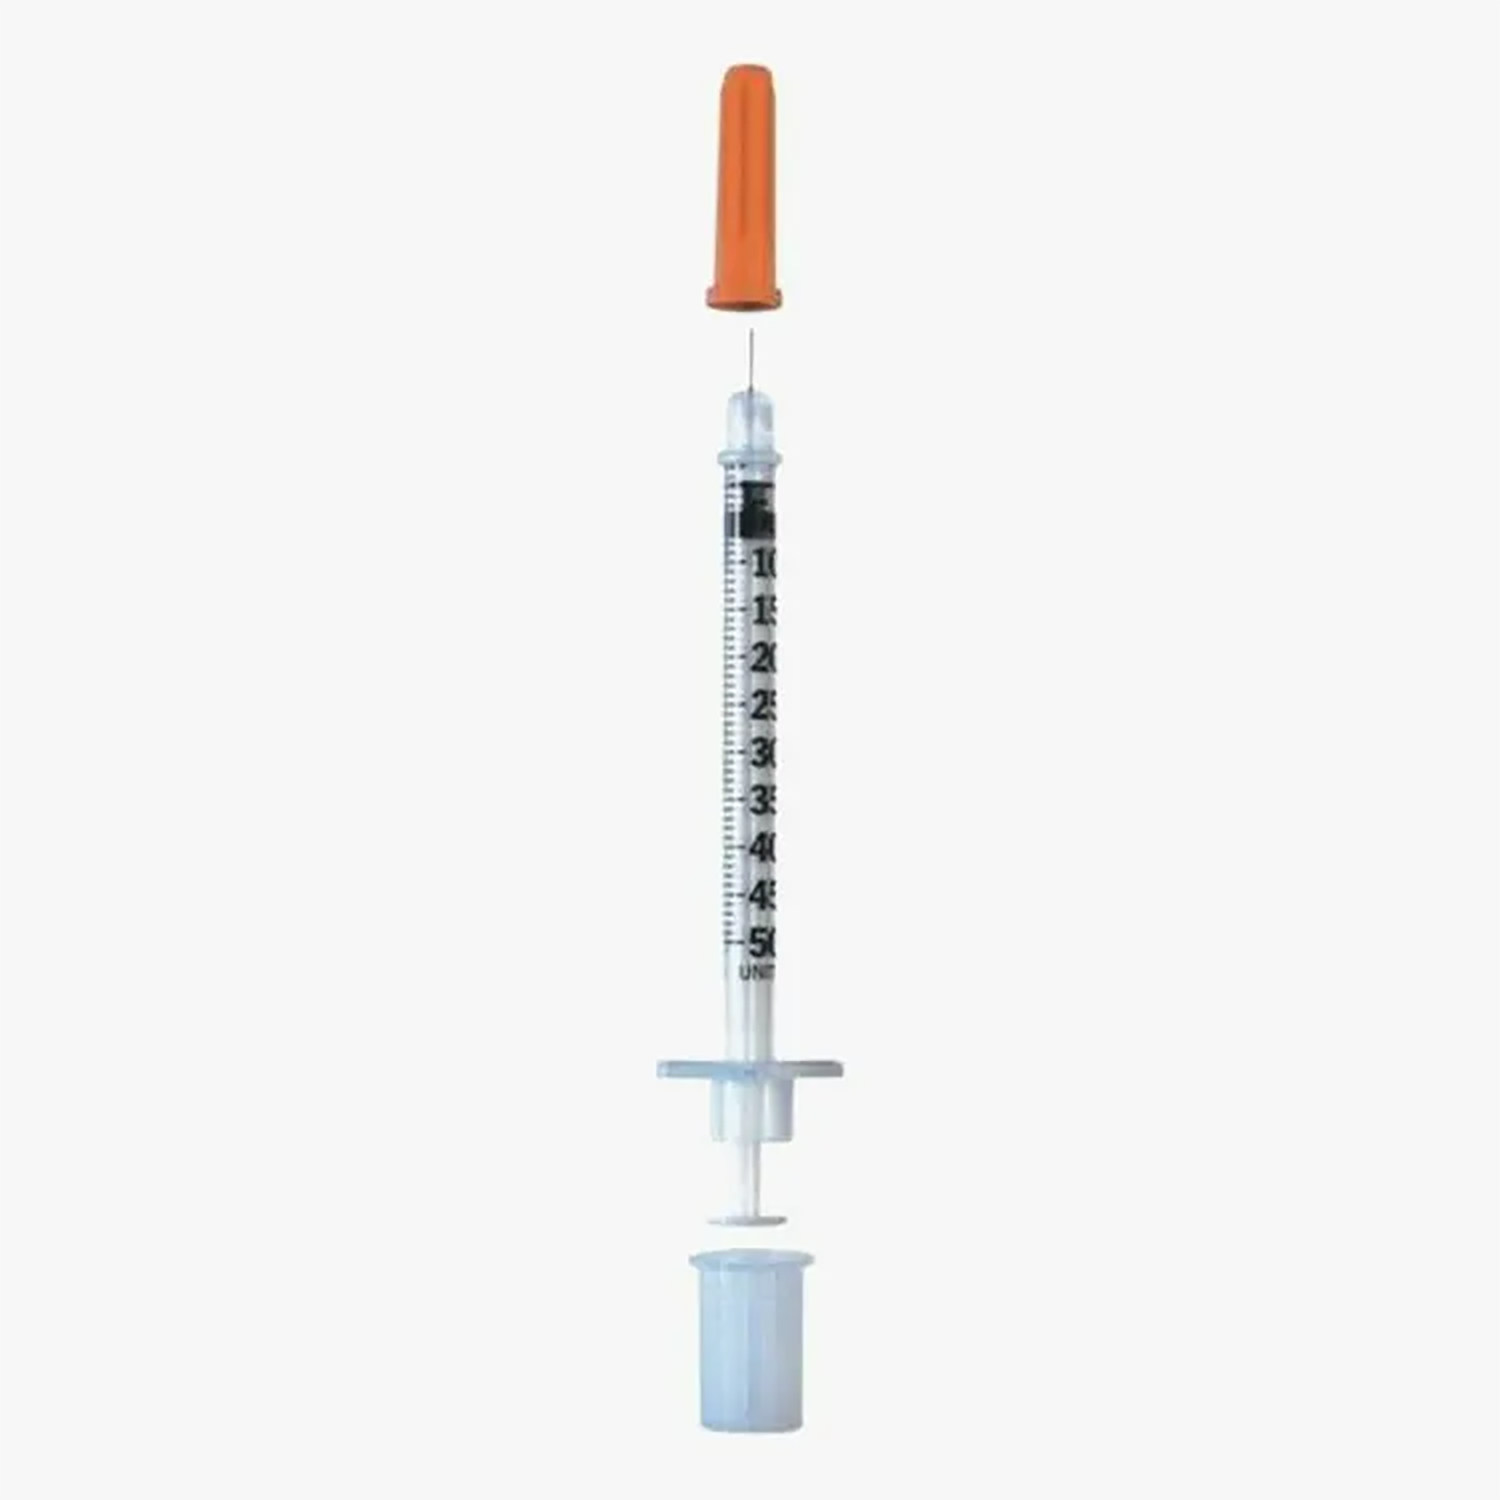 BD Microfine Insulin Syringe | 30G x 0.5ml | Short | Pack of 200